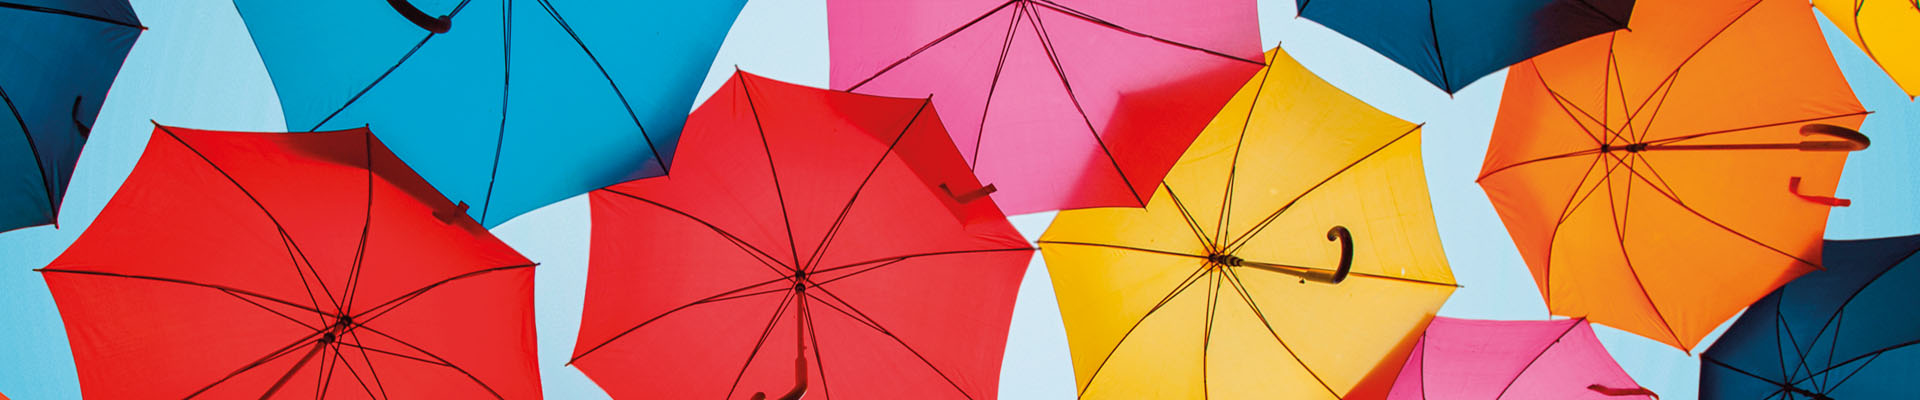 A képen színes esernyők láthatóak.